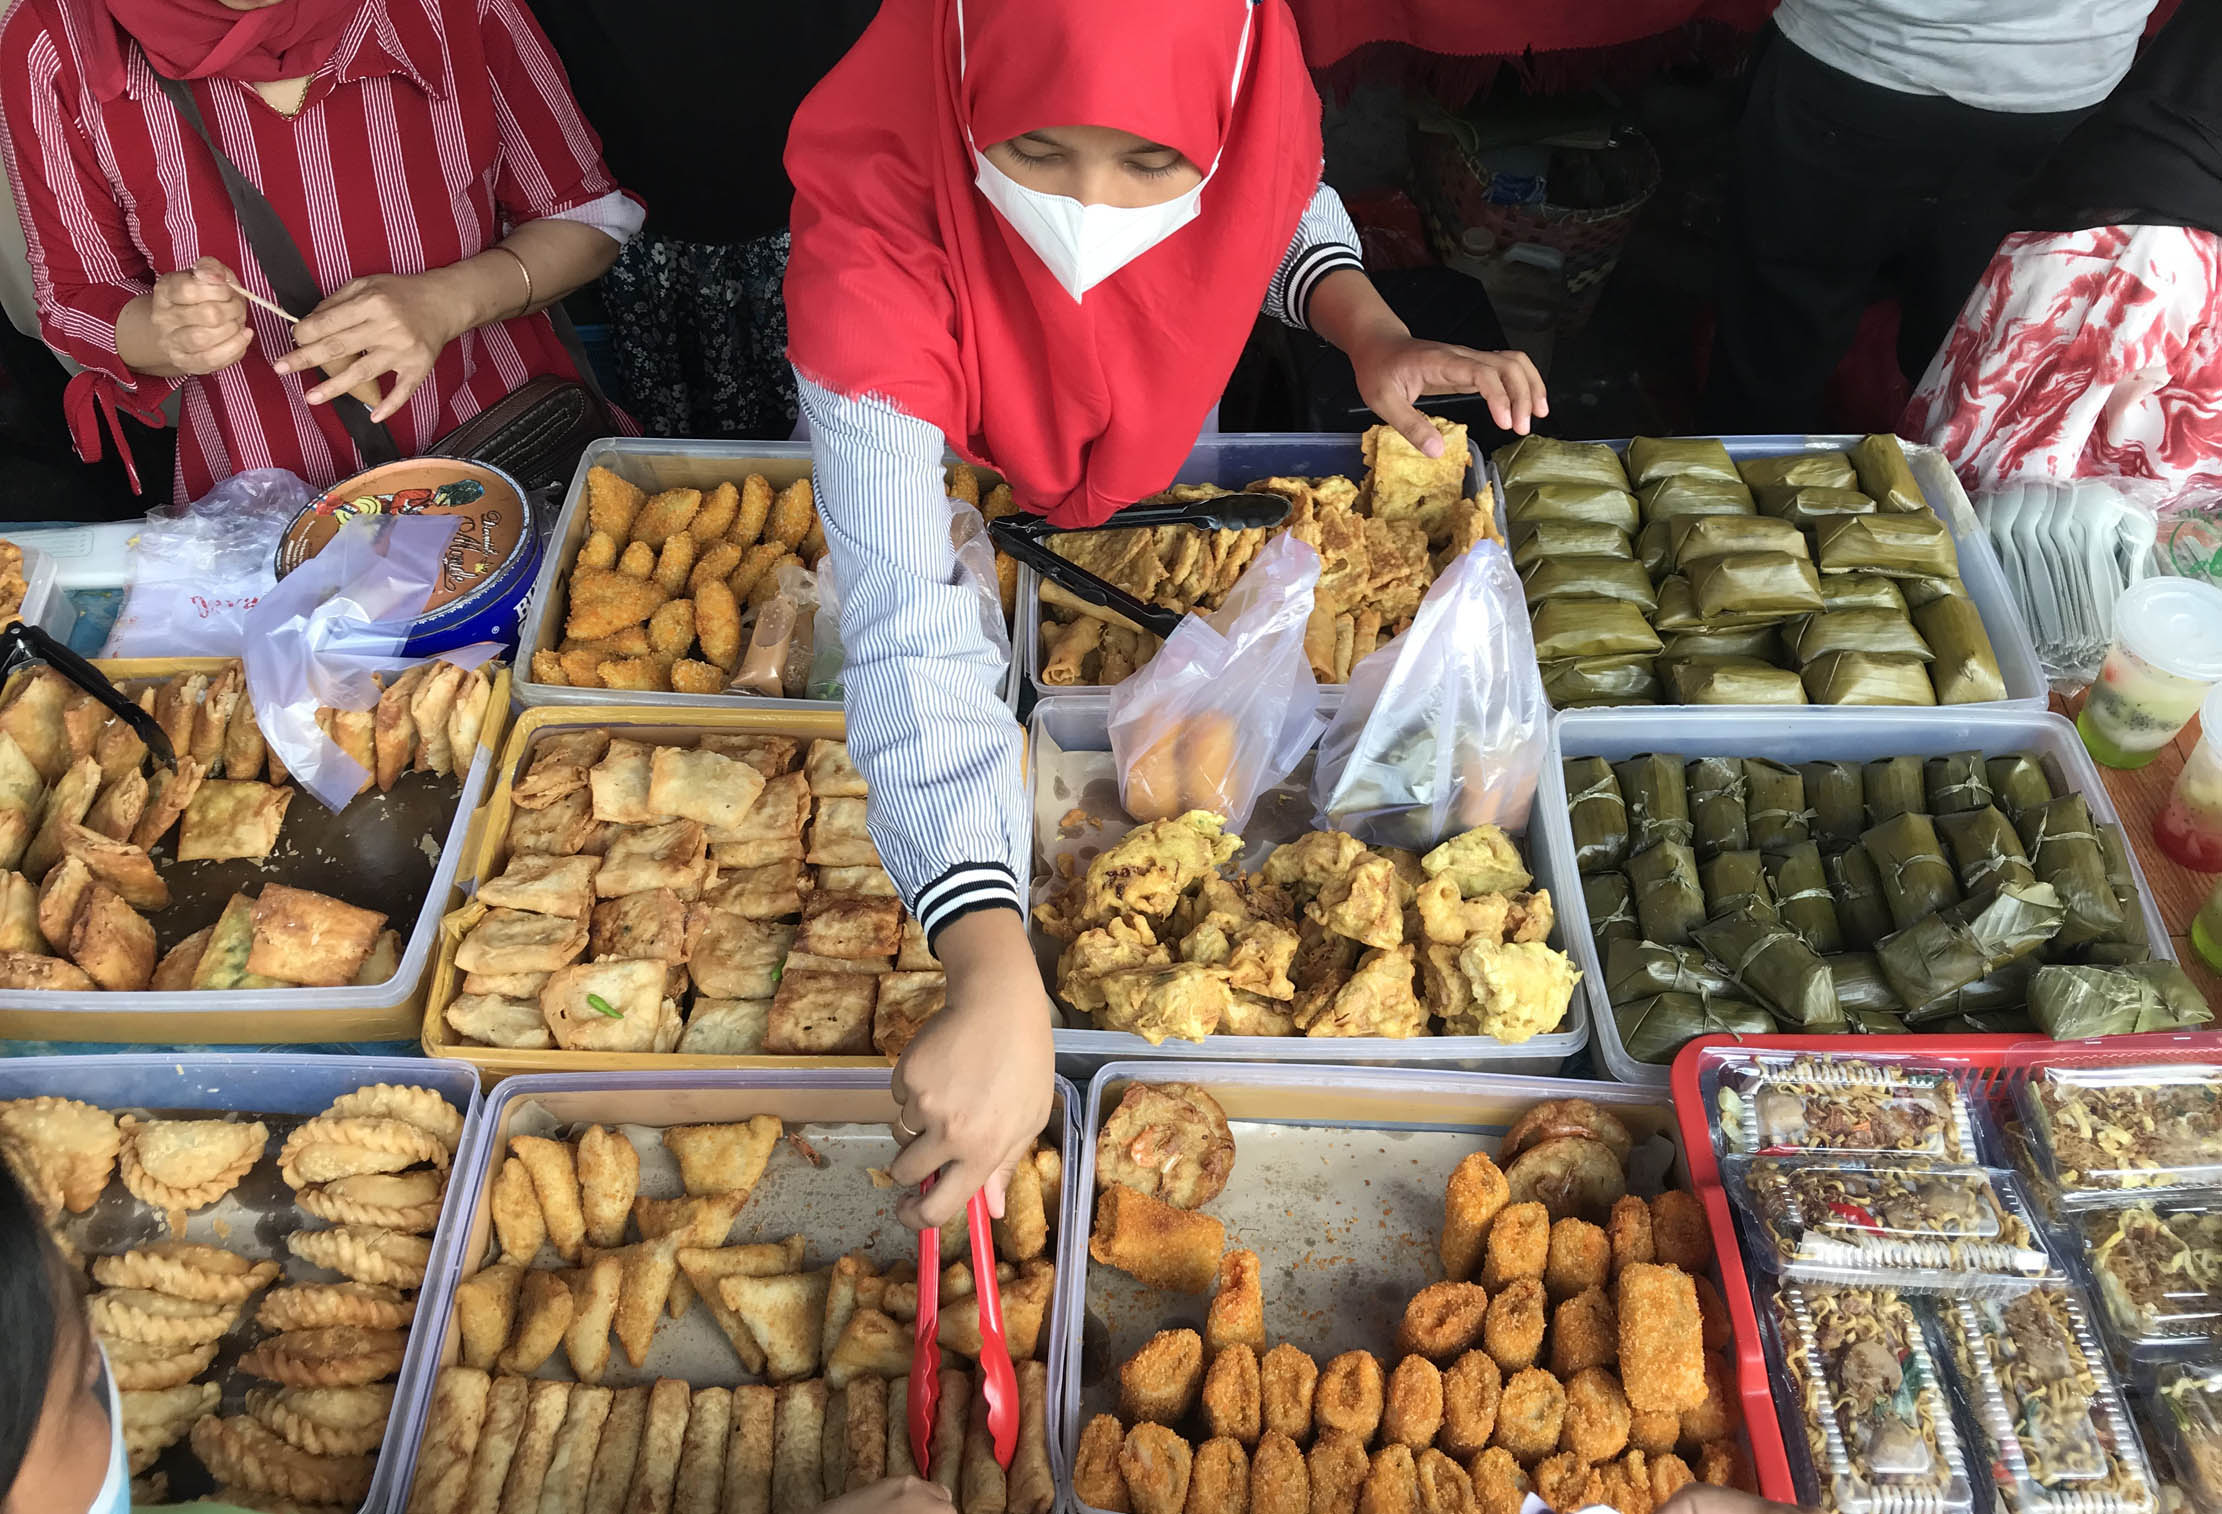 Nampak sejumlah warga menyerbu bazar takjil Benhil yang menjual berbagai macam makanan menjelang waktu berbuka puasa, Minggu 10 April 2022. Foto : Panji Asmoro/TrenAsia